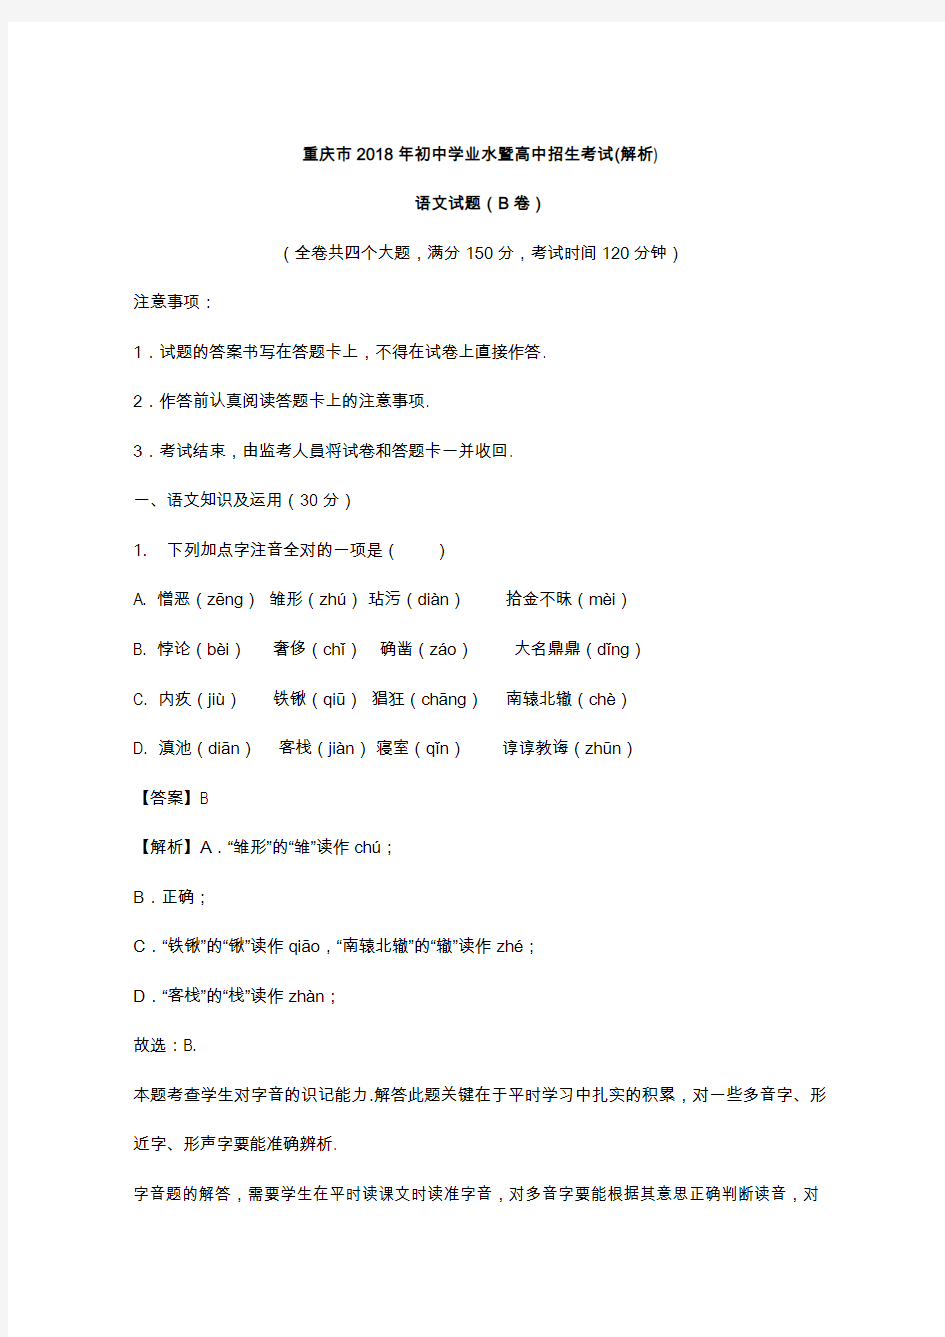 重庆市2018年中考语文试题(B卷)及答案解析